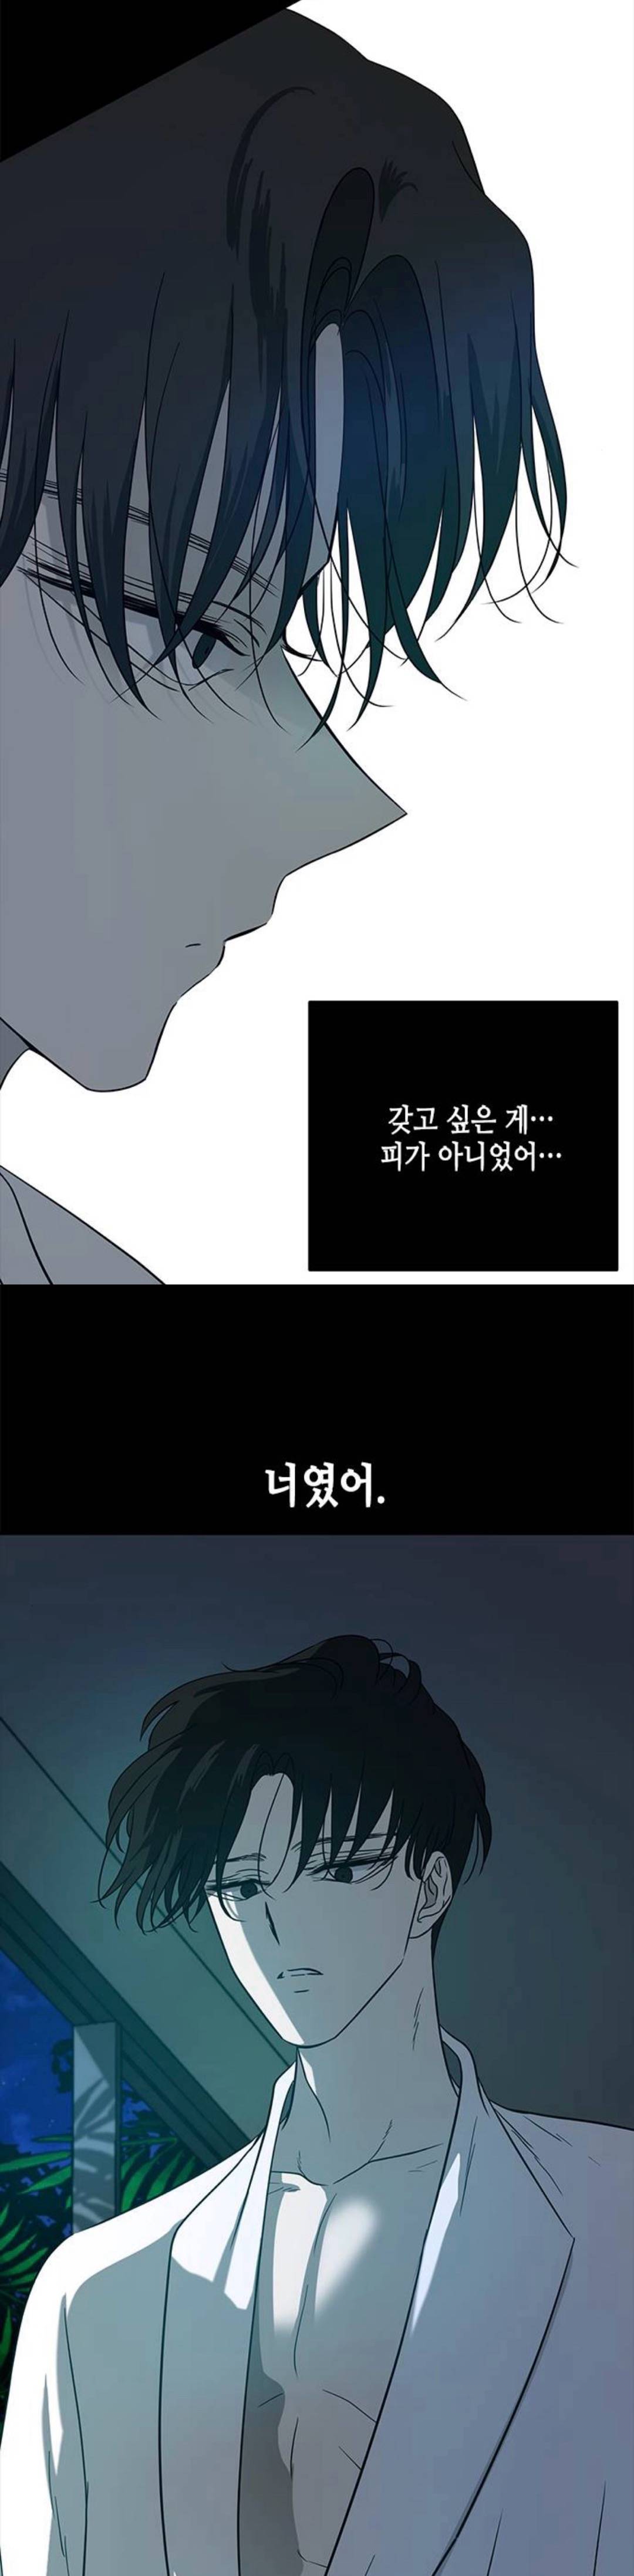 웹툰 올가미 박윤수 헛소리 모음집 | 인스티즈